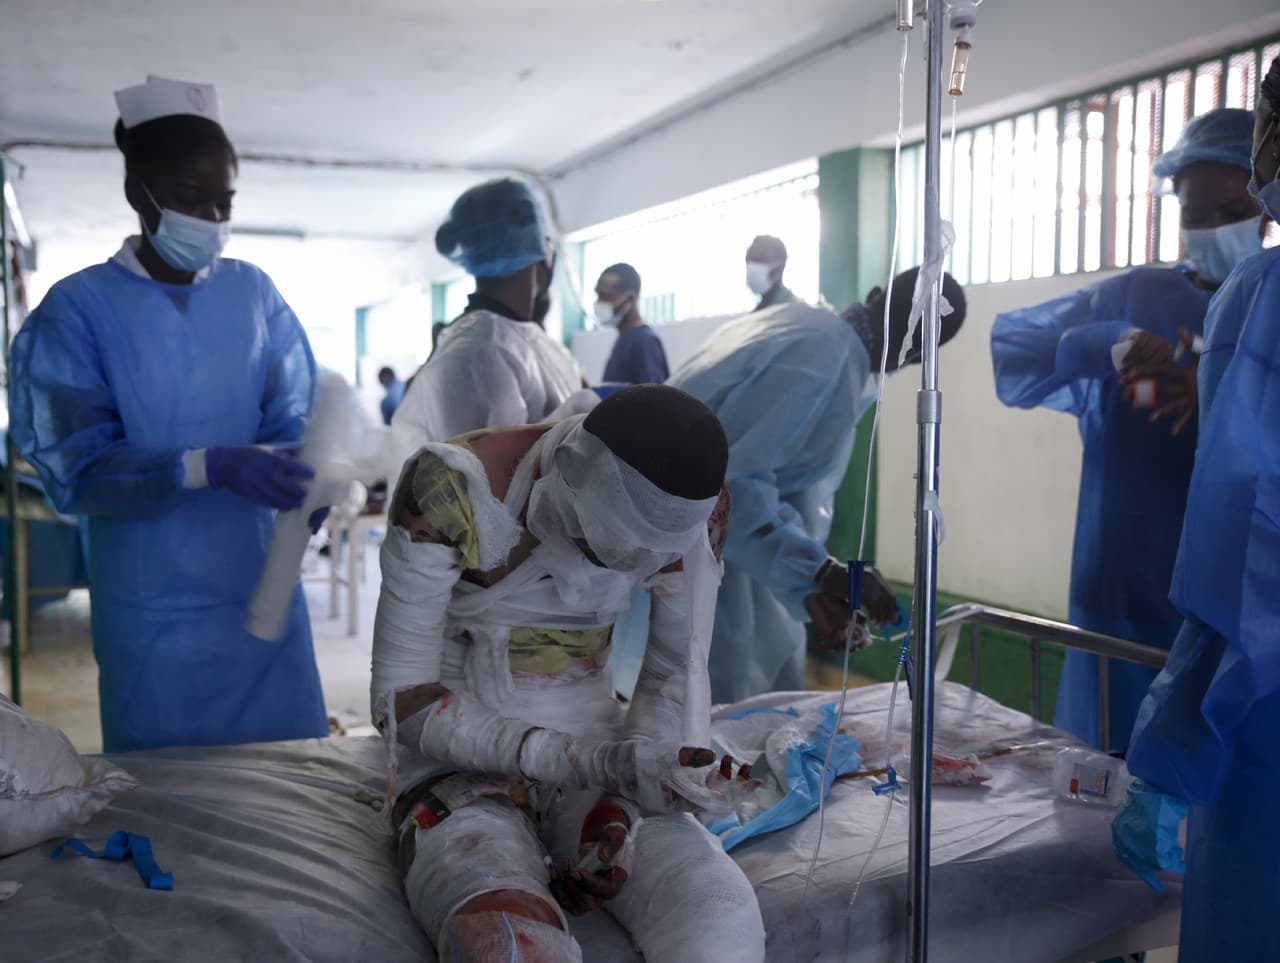 Zranených po výbuchu ošetrujú v nemocnici